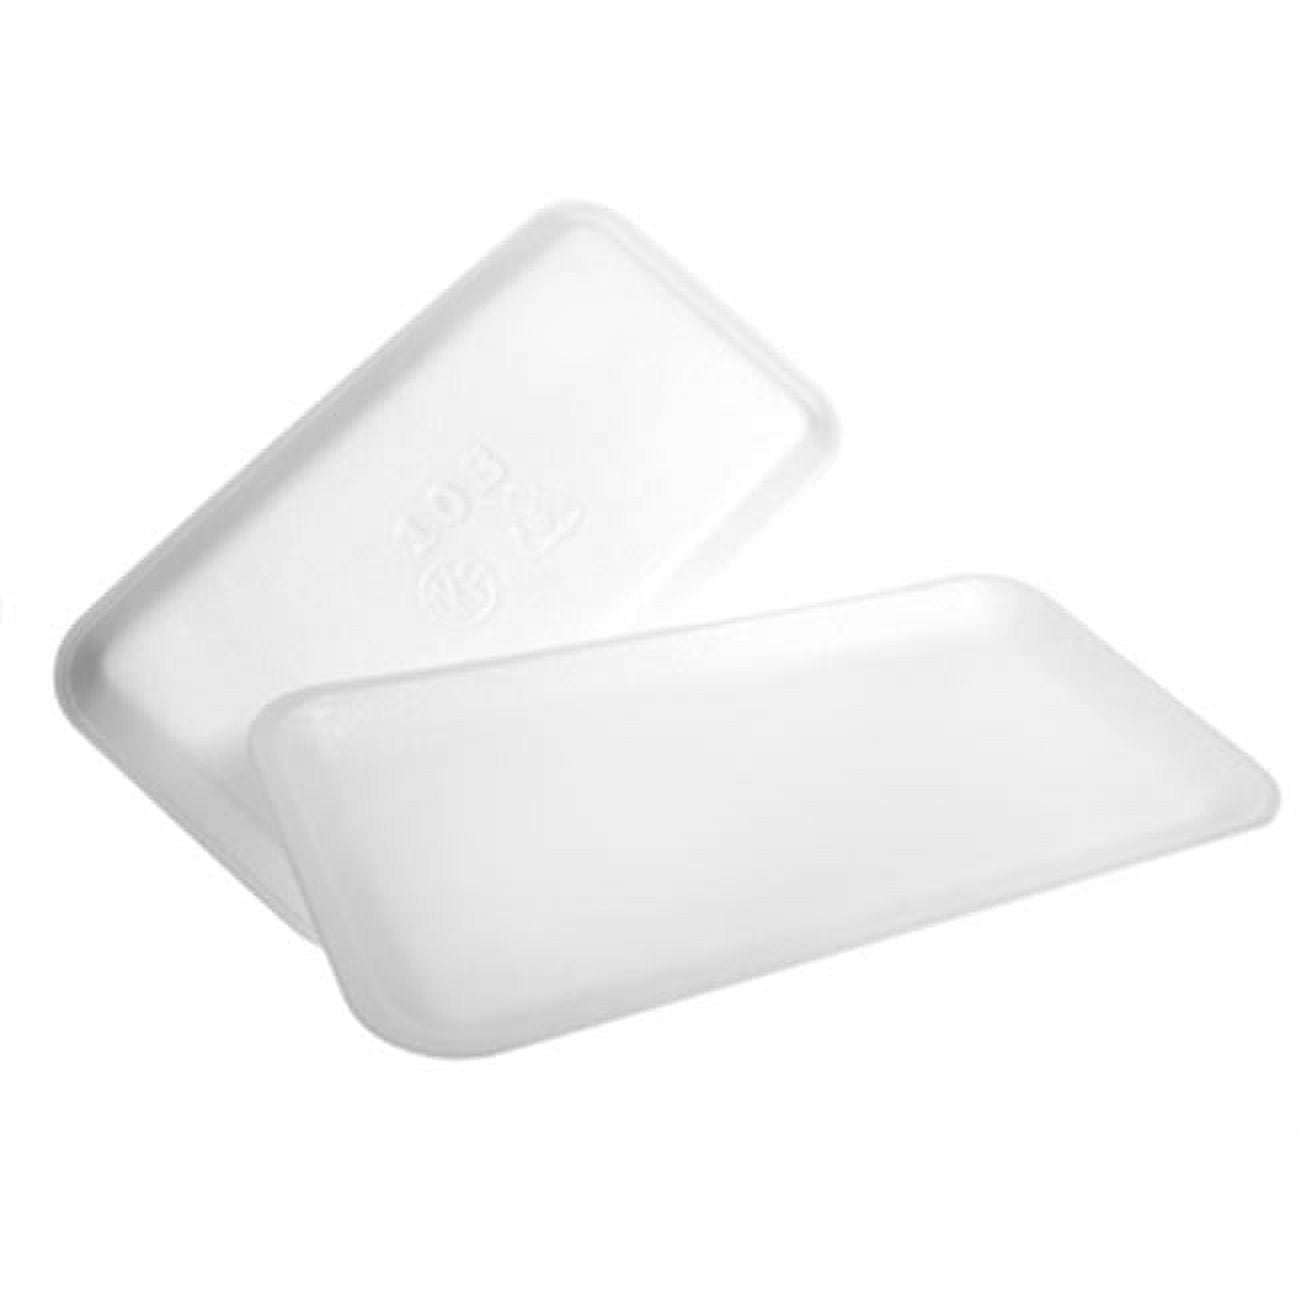 201010sw00 10s White Foam Meat Tray - Case Of 500